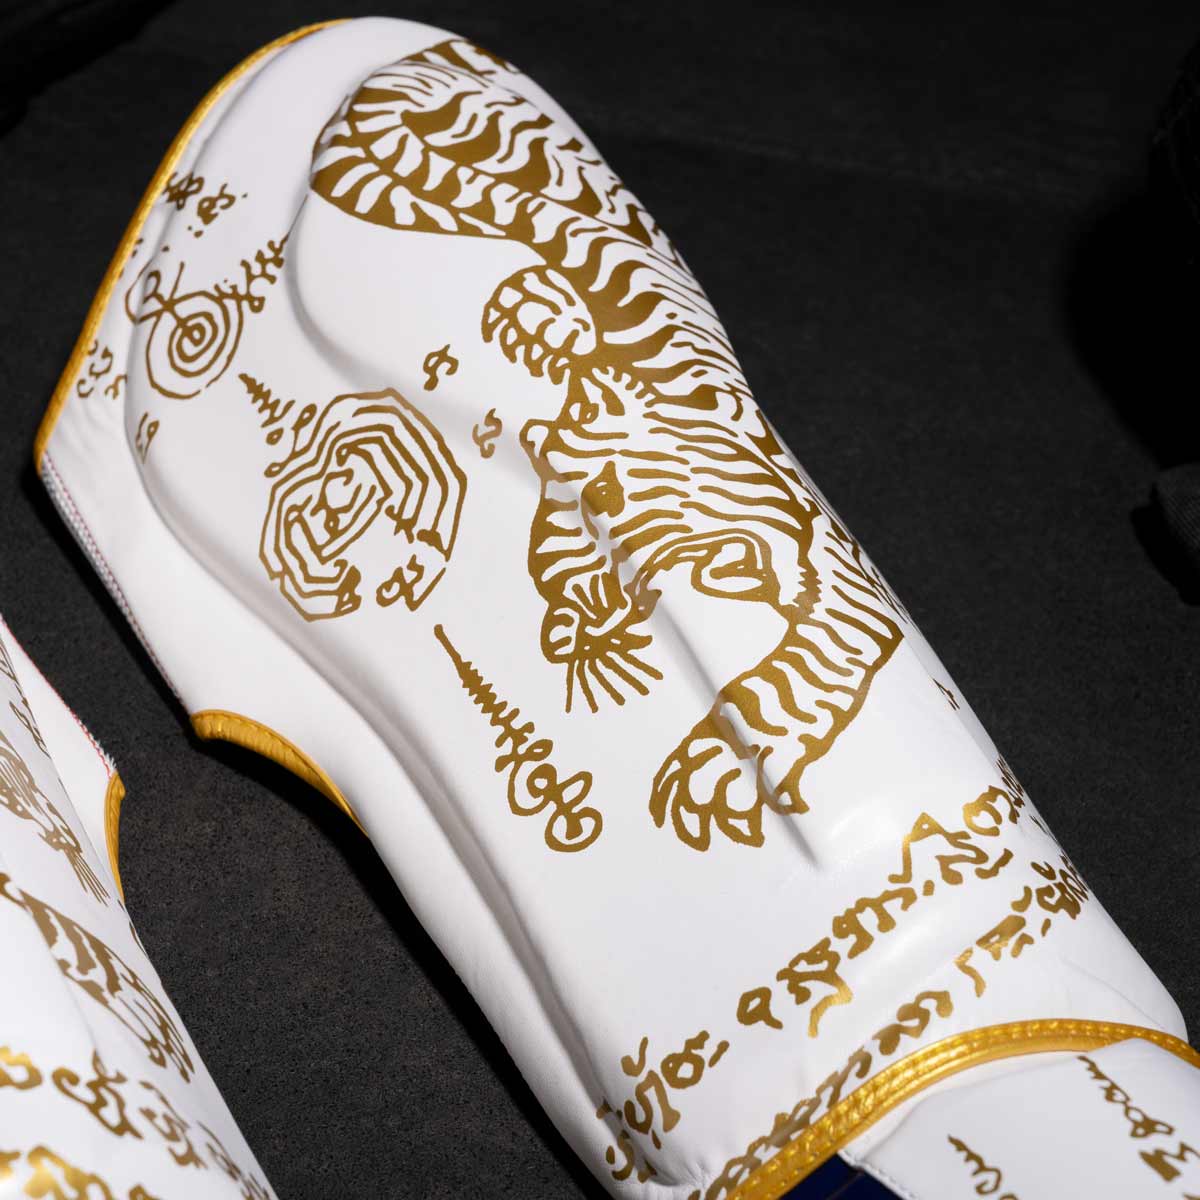 Phantom Muay Thai Schienbeinschutz für Thaiboxen und MMA Sparring, Wettkampf und Training. Im traditionellen Sak Yant Design und der limitierten Farbe Weiß/Gold.